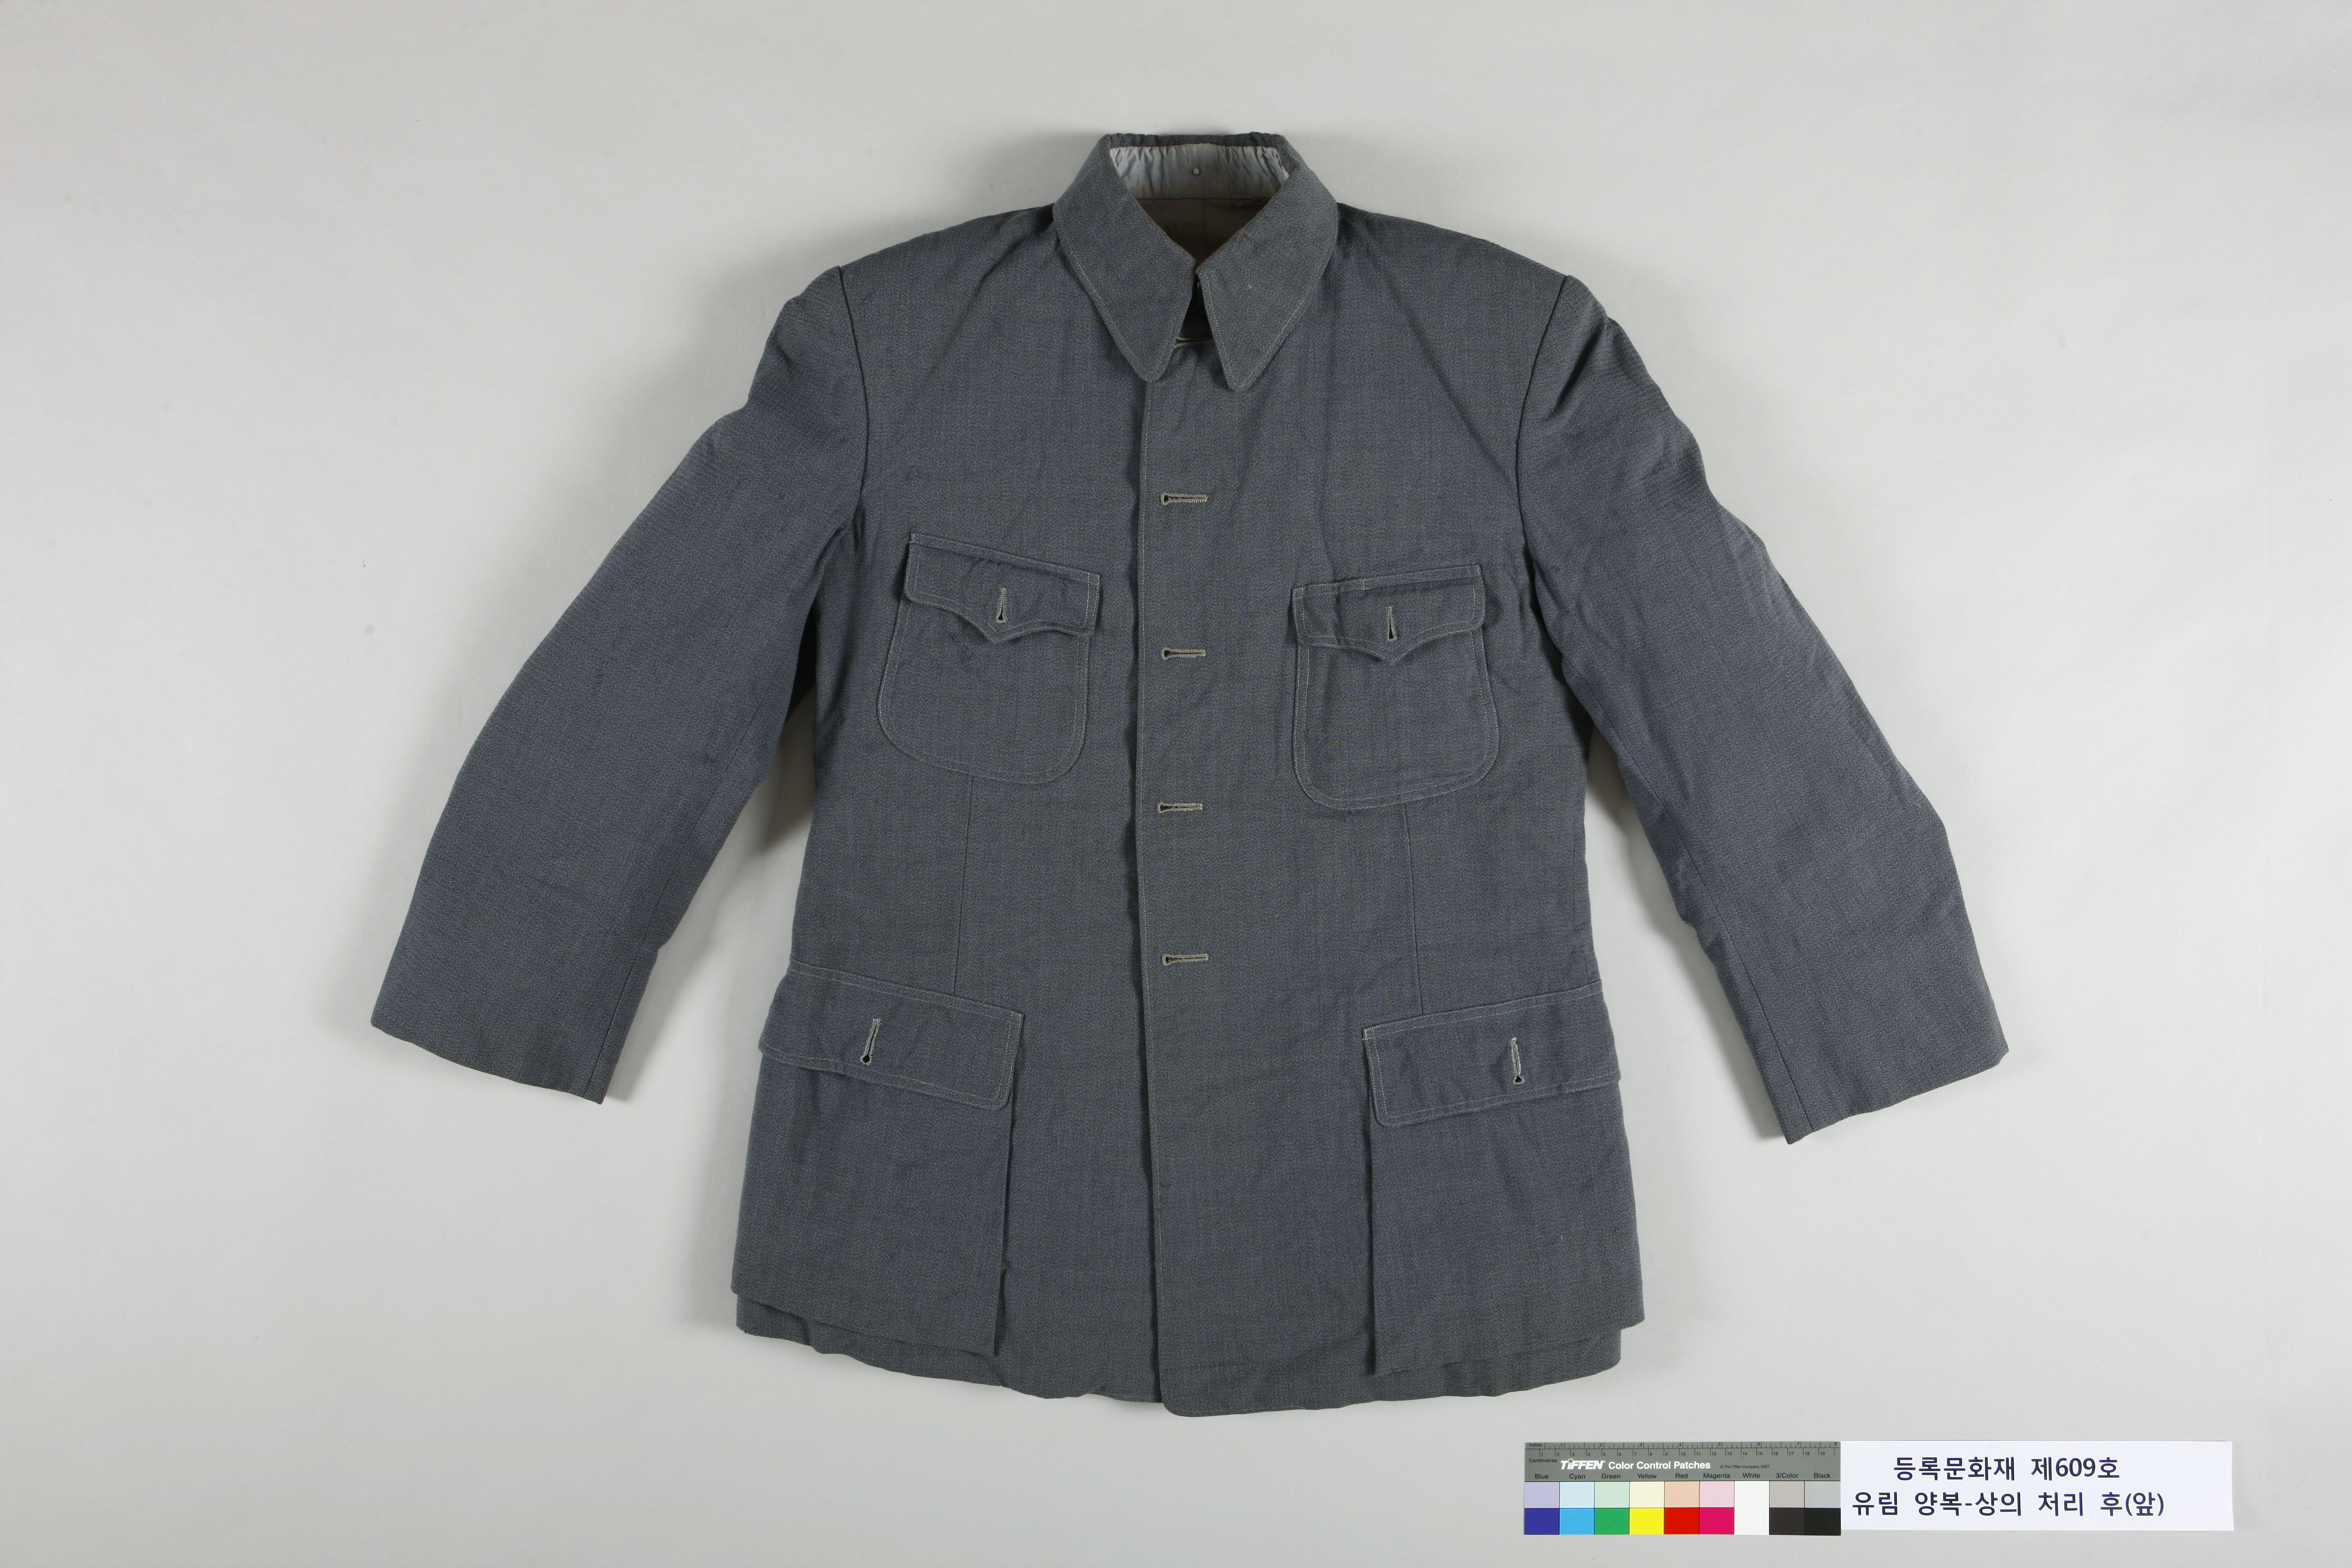 독립운동가 유림이 생전에 착용한 양복 상의를 보존처리한 모습.